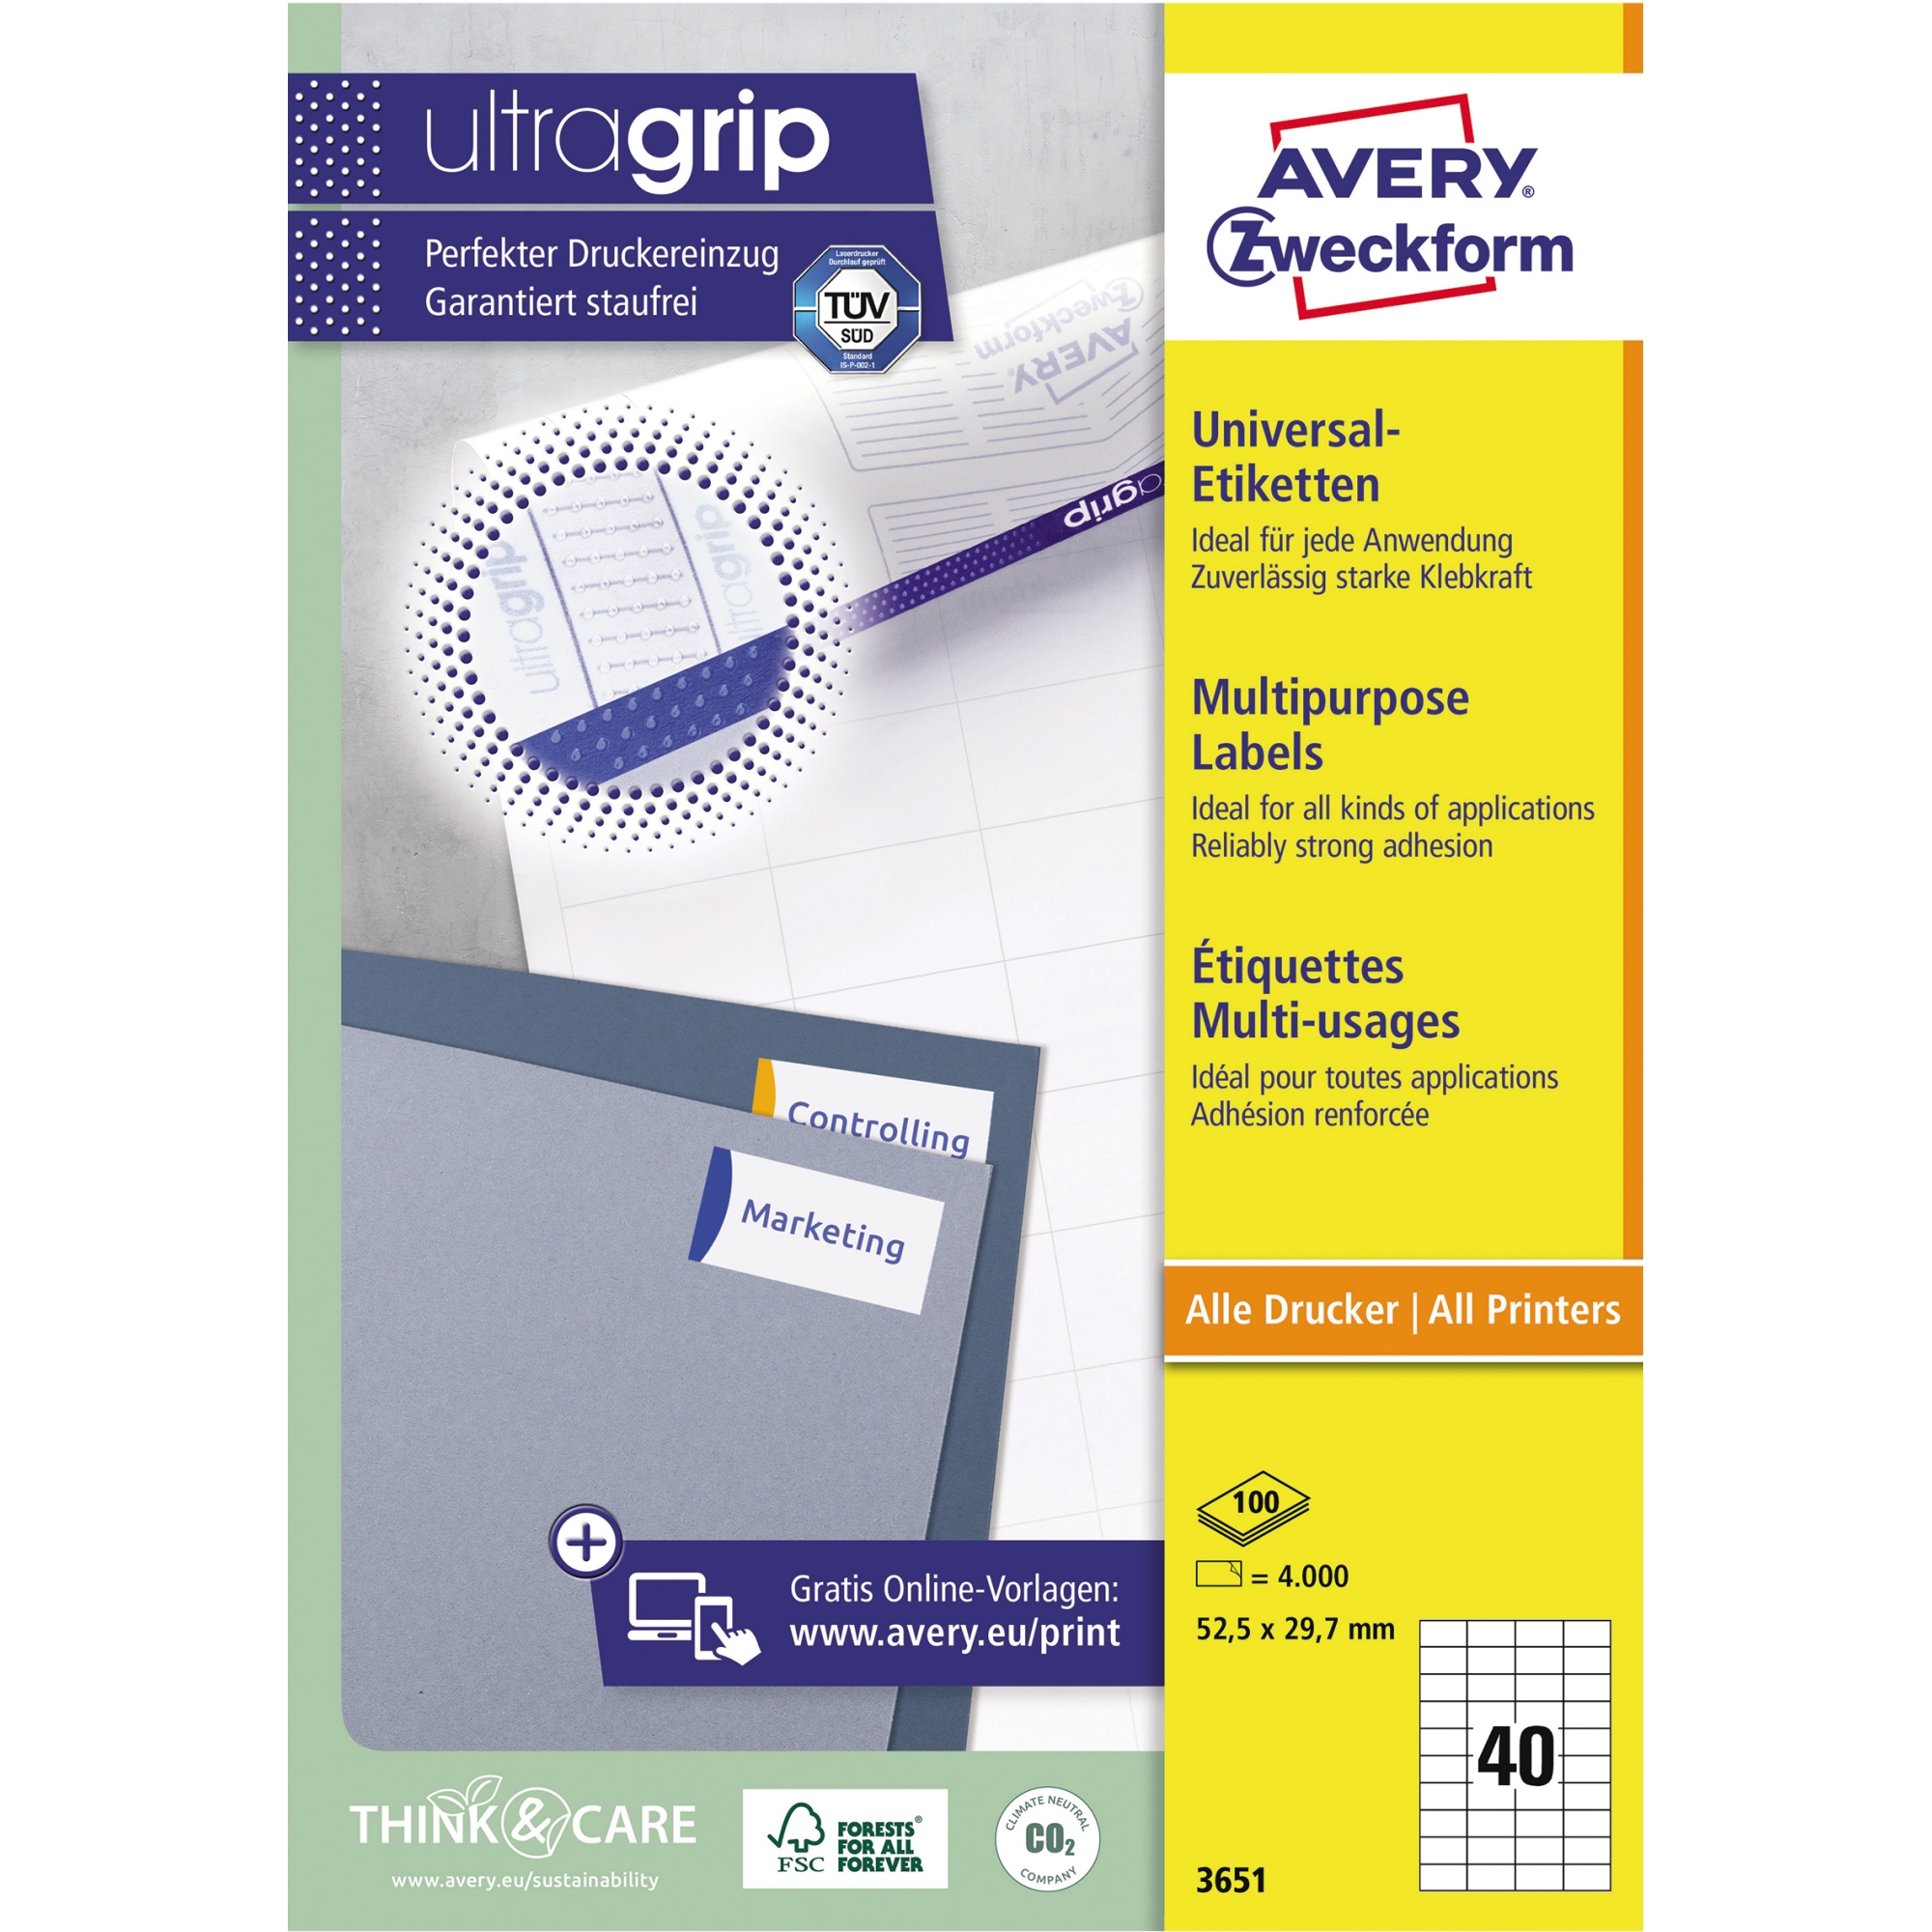 Avery Zweckform Universaletikett ultragrip 3651 52,5 x 29,7 mm weiß